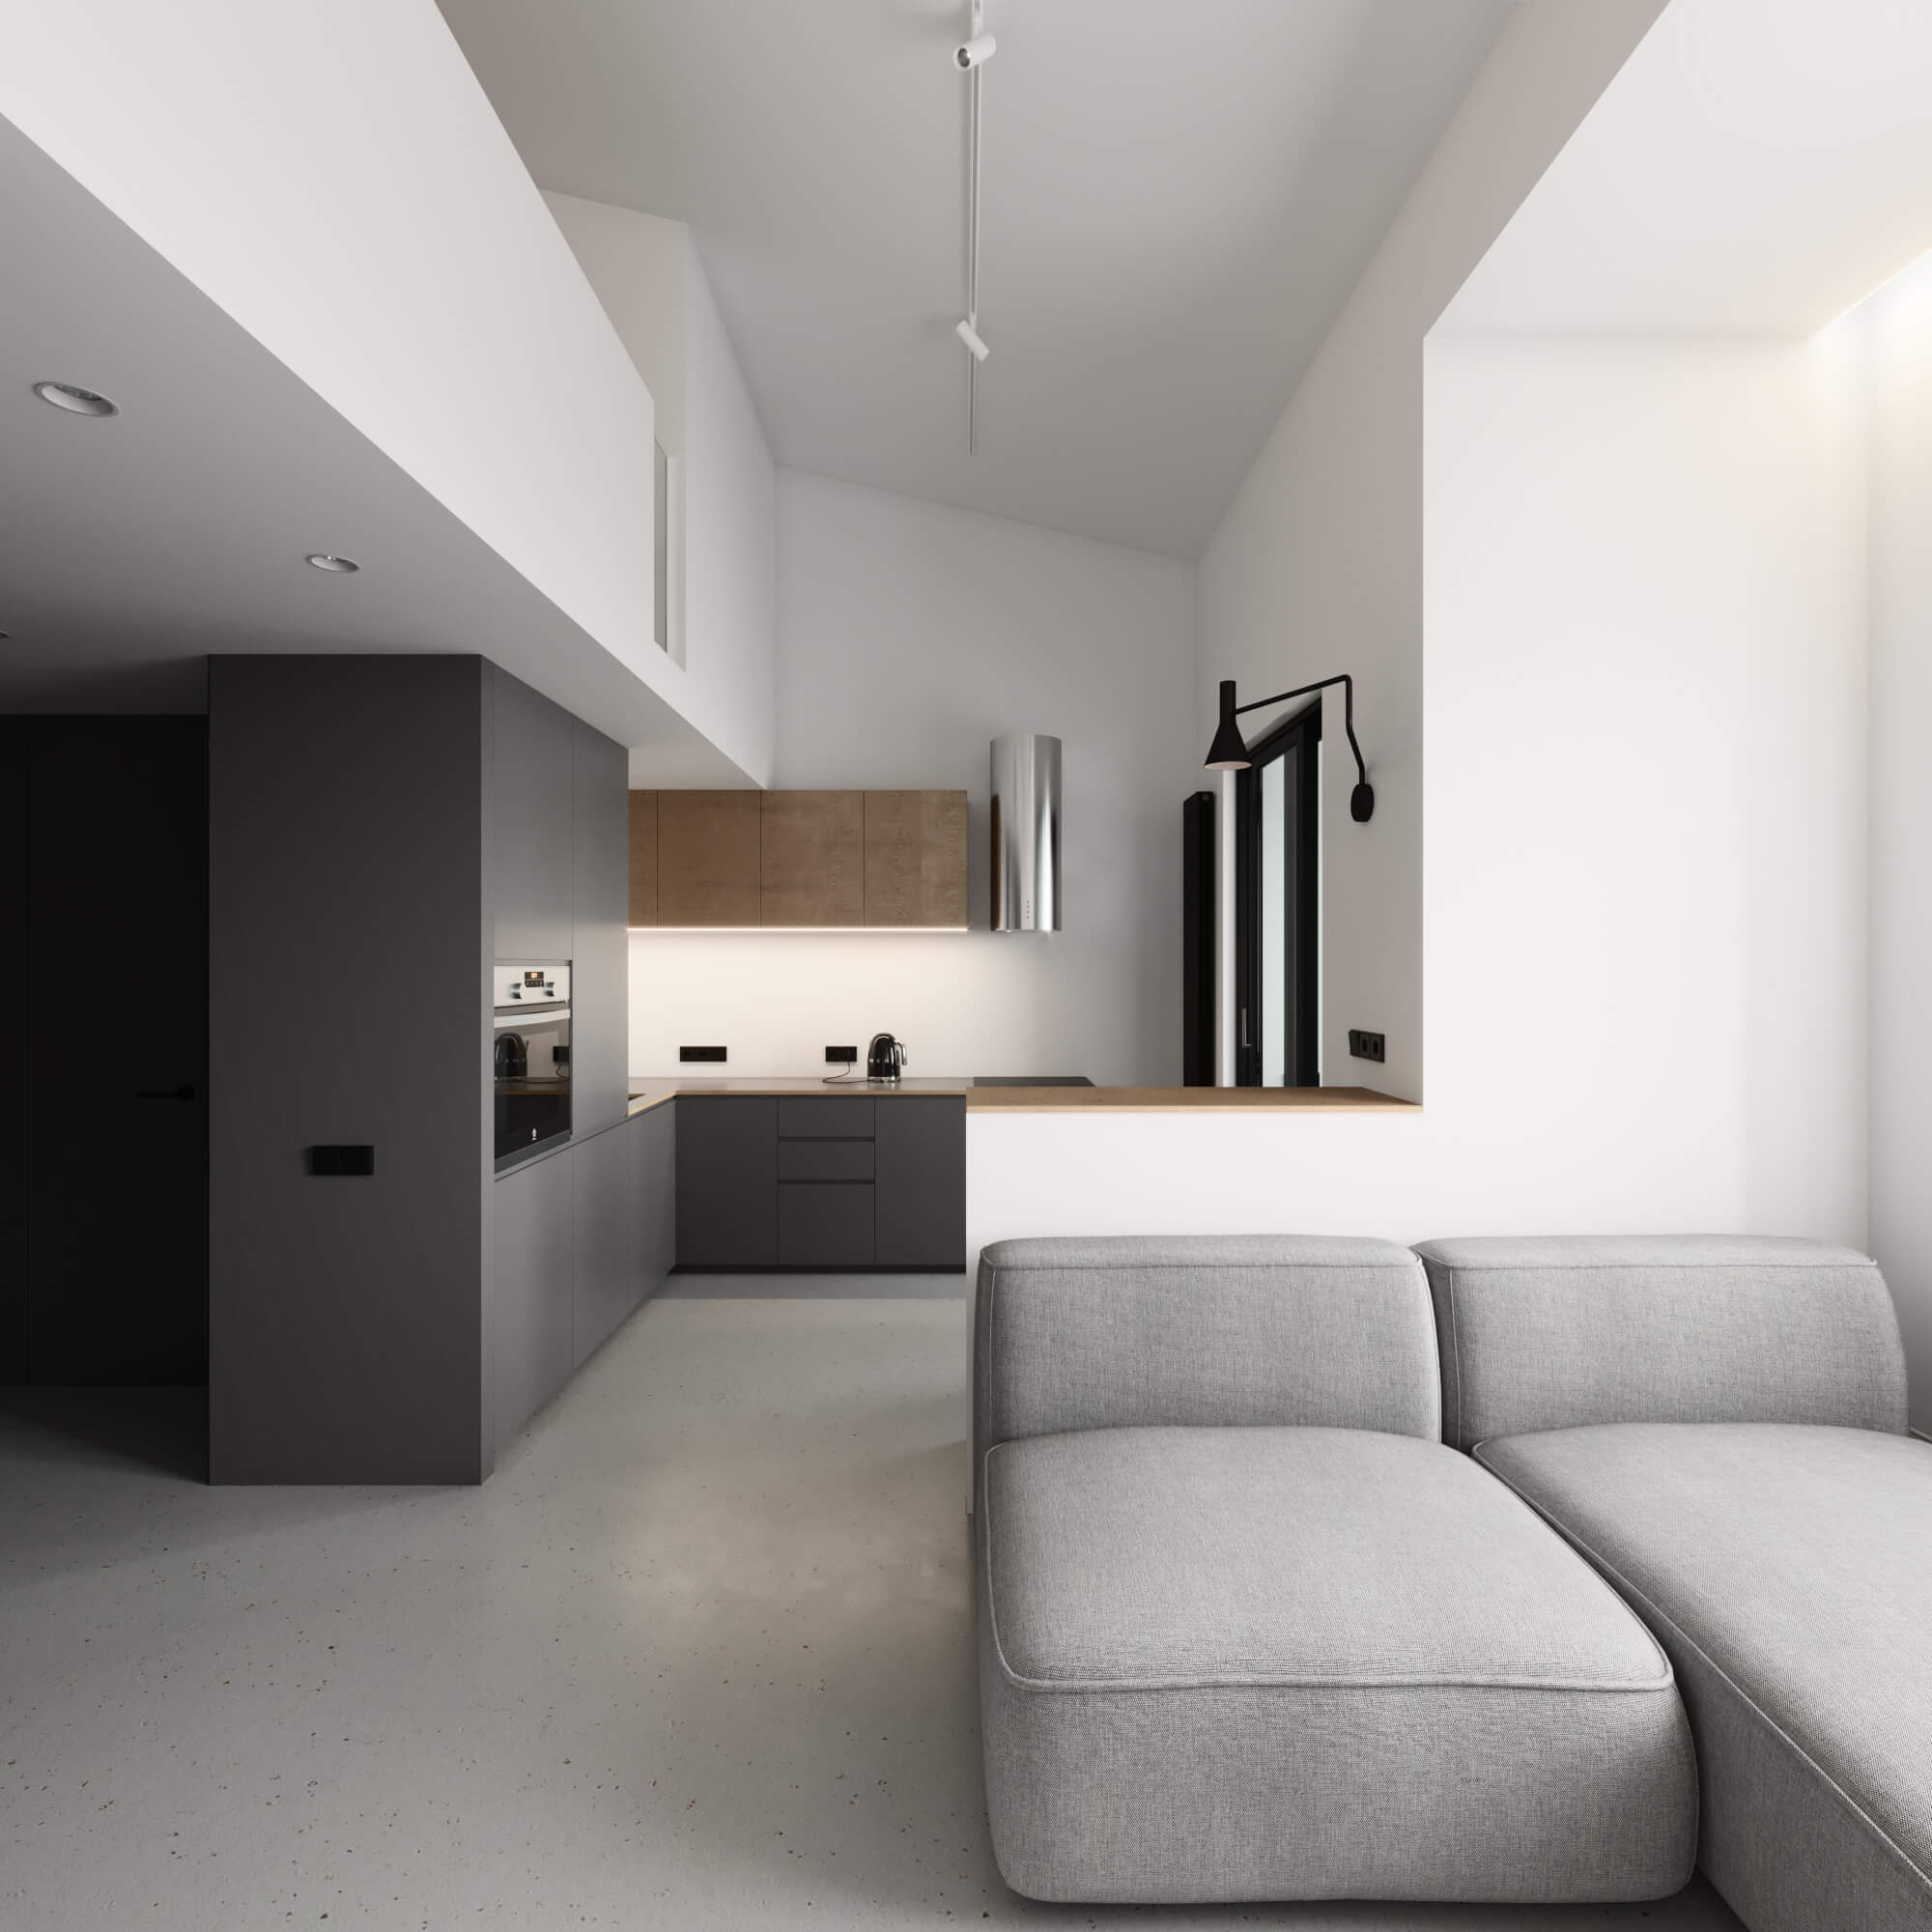 俄罗斯Korolev简约黑白风复式公寓设计